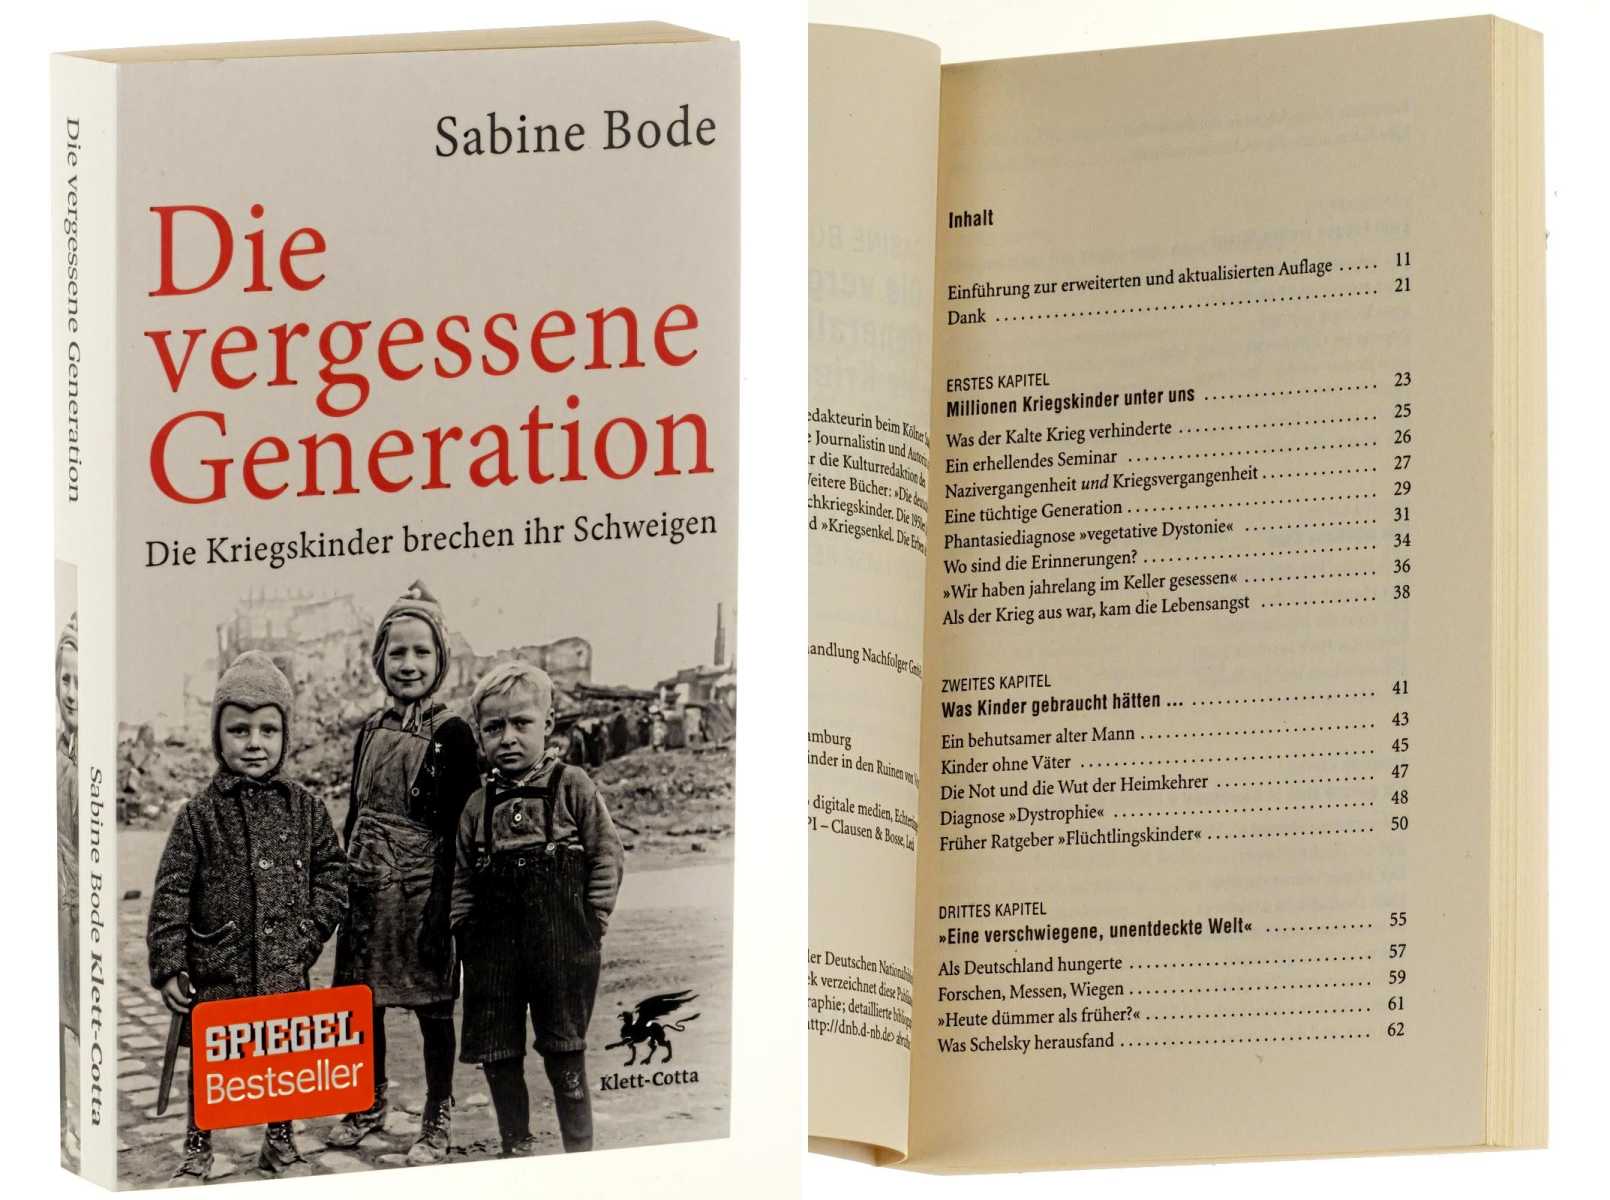 Bode, Sabine:  Die vergessene Generation. Die Kriegskinder brechen ihr Schweigen. 